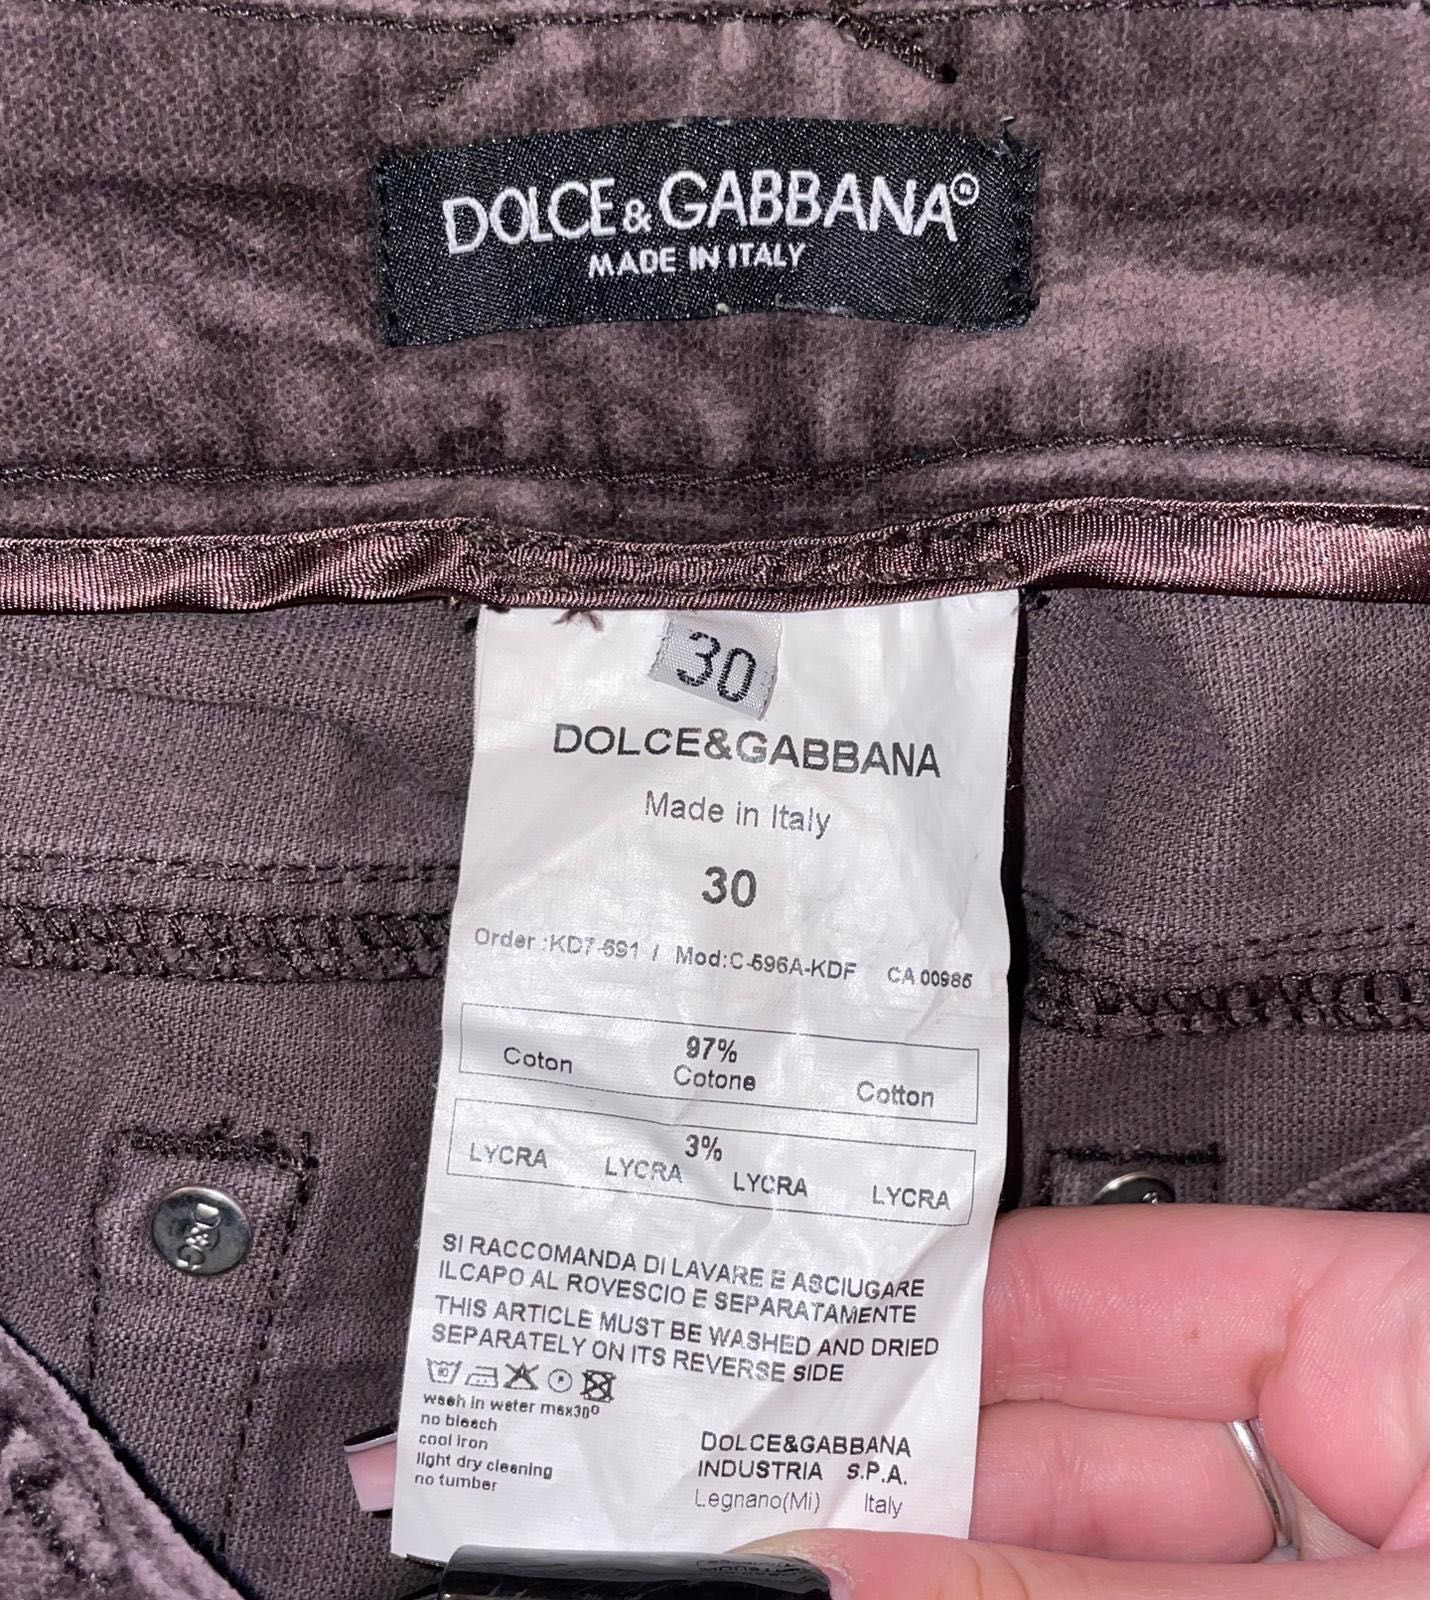 Blugi Dolce & Gabbana, Guess, Roberto Cavalli